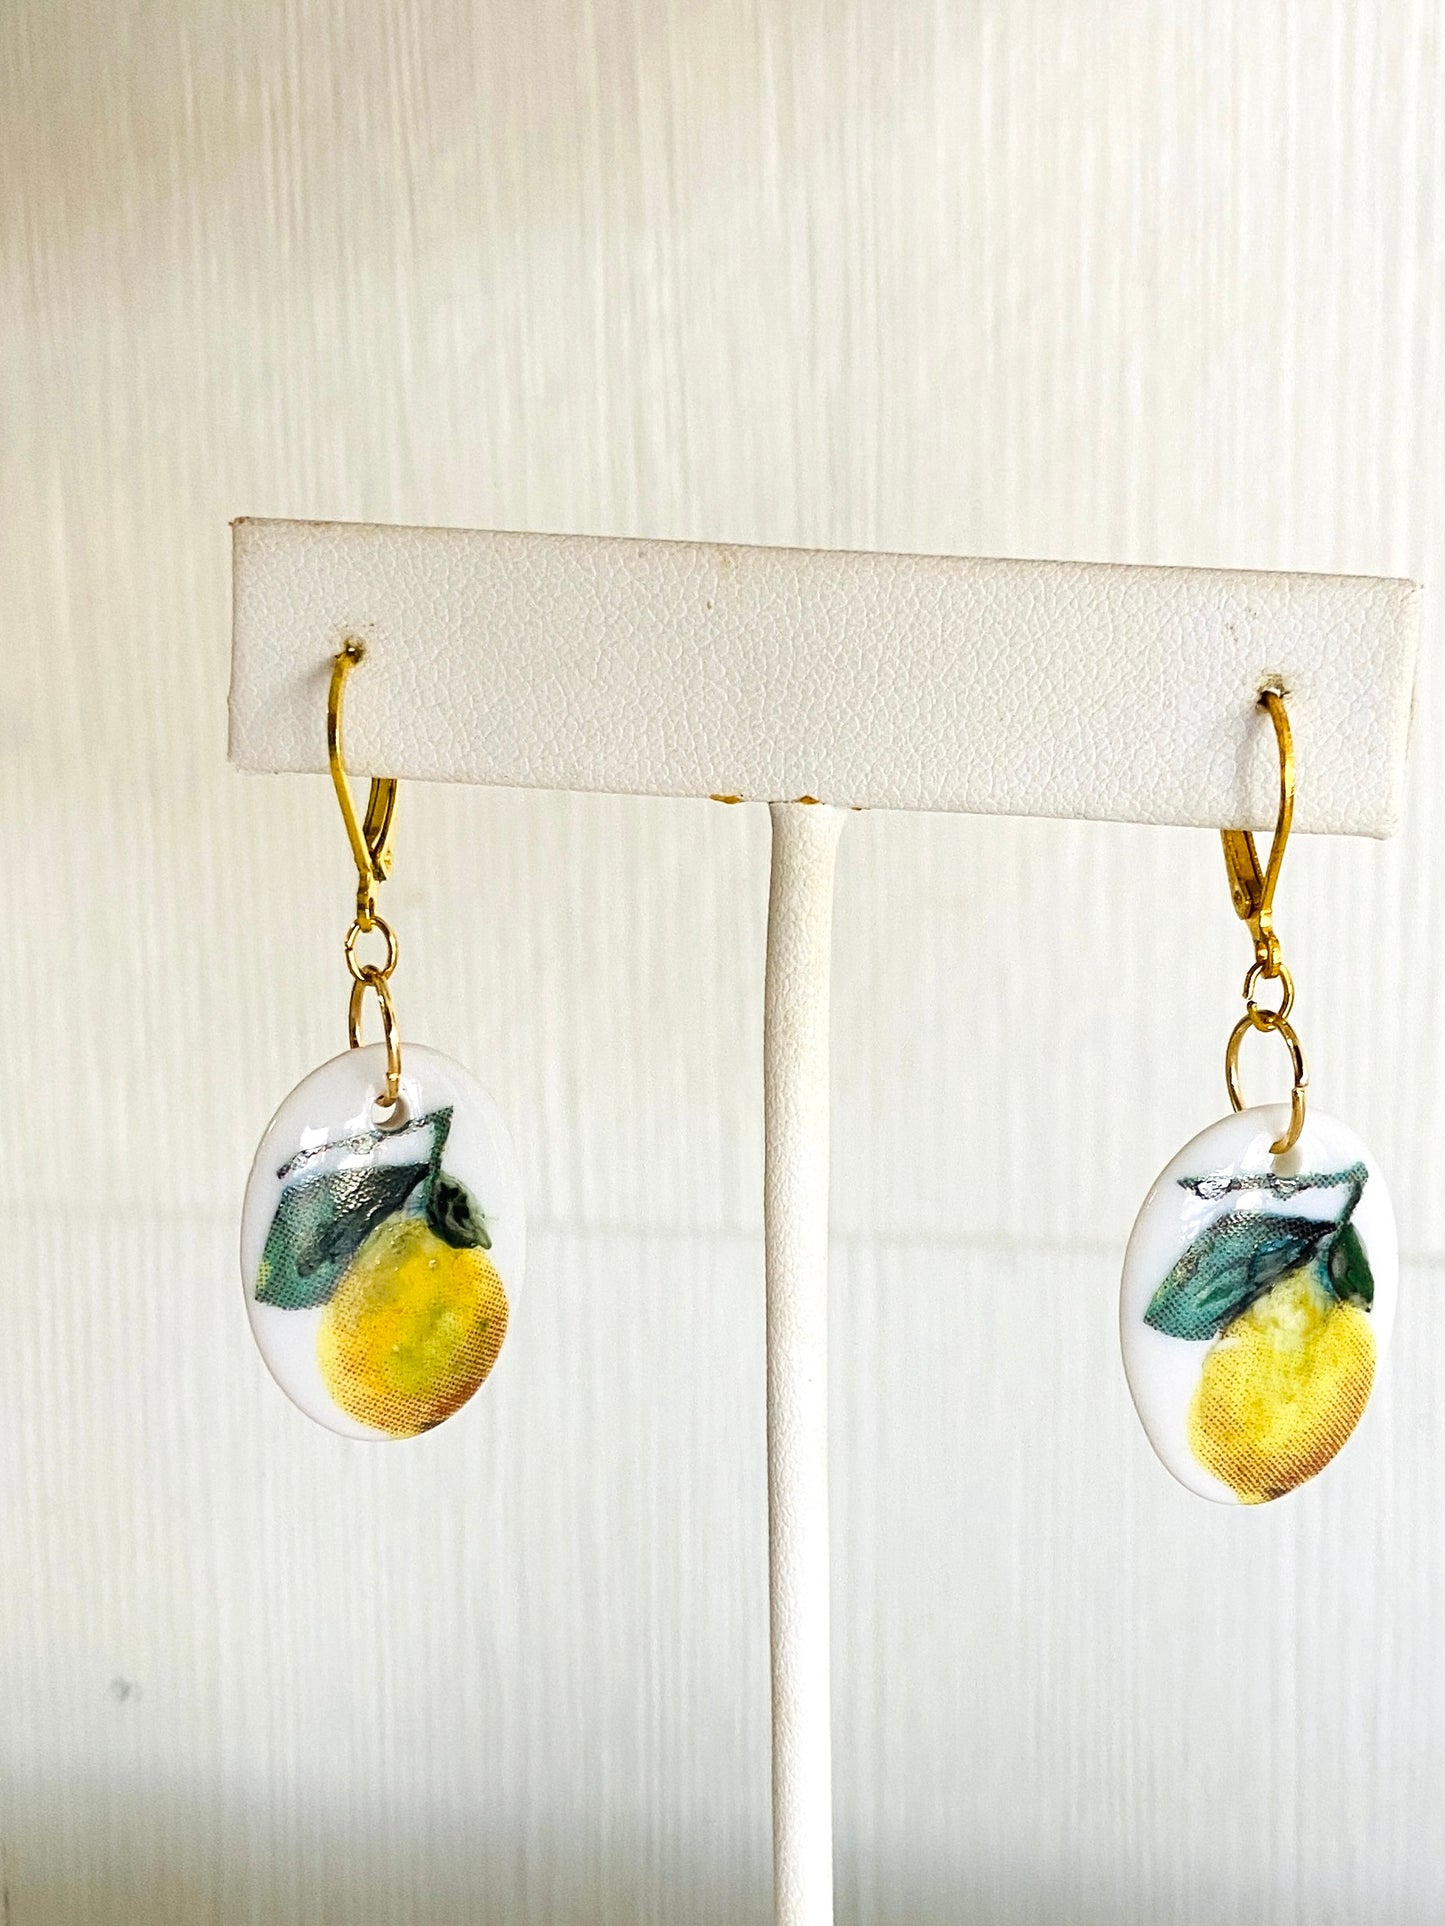 Lemon earrings dainty earrings fruit jewelry